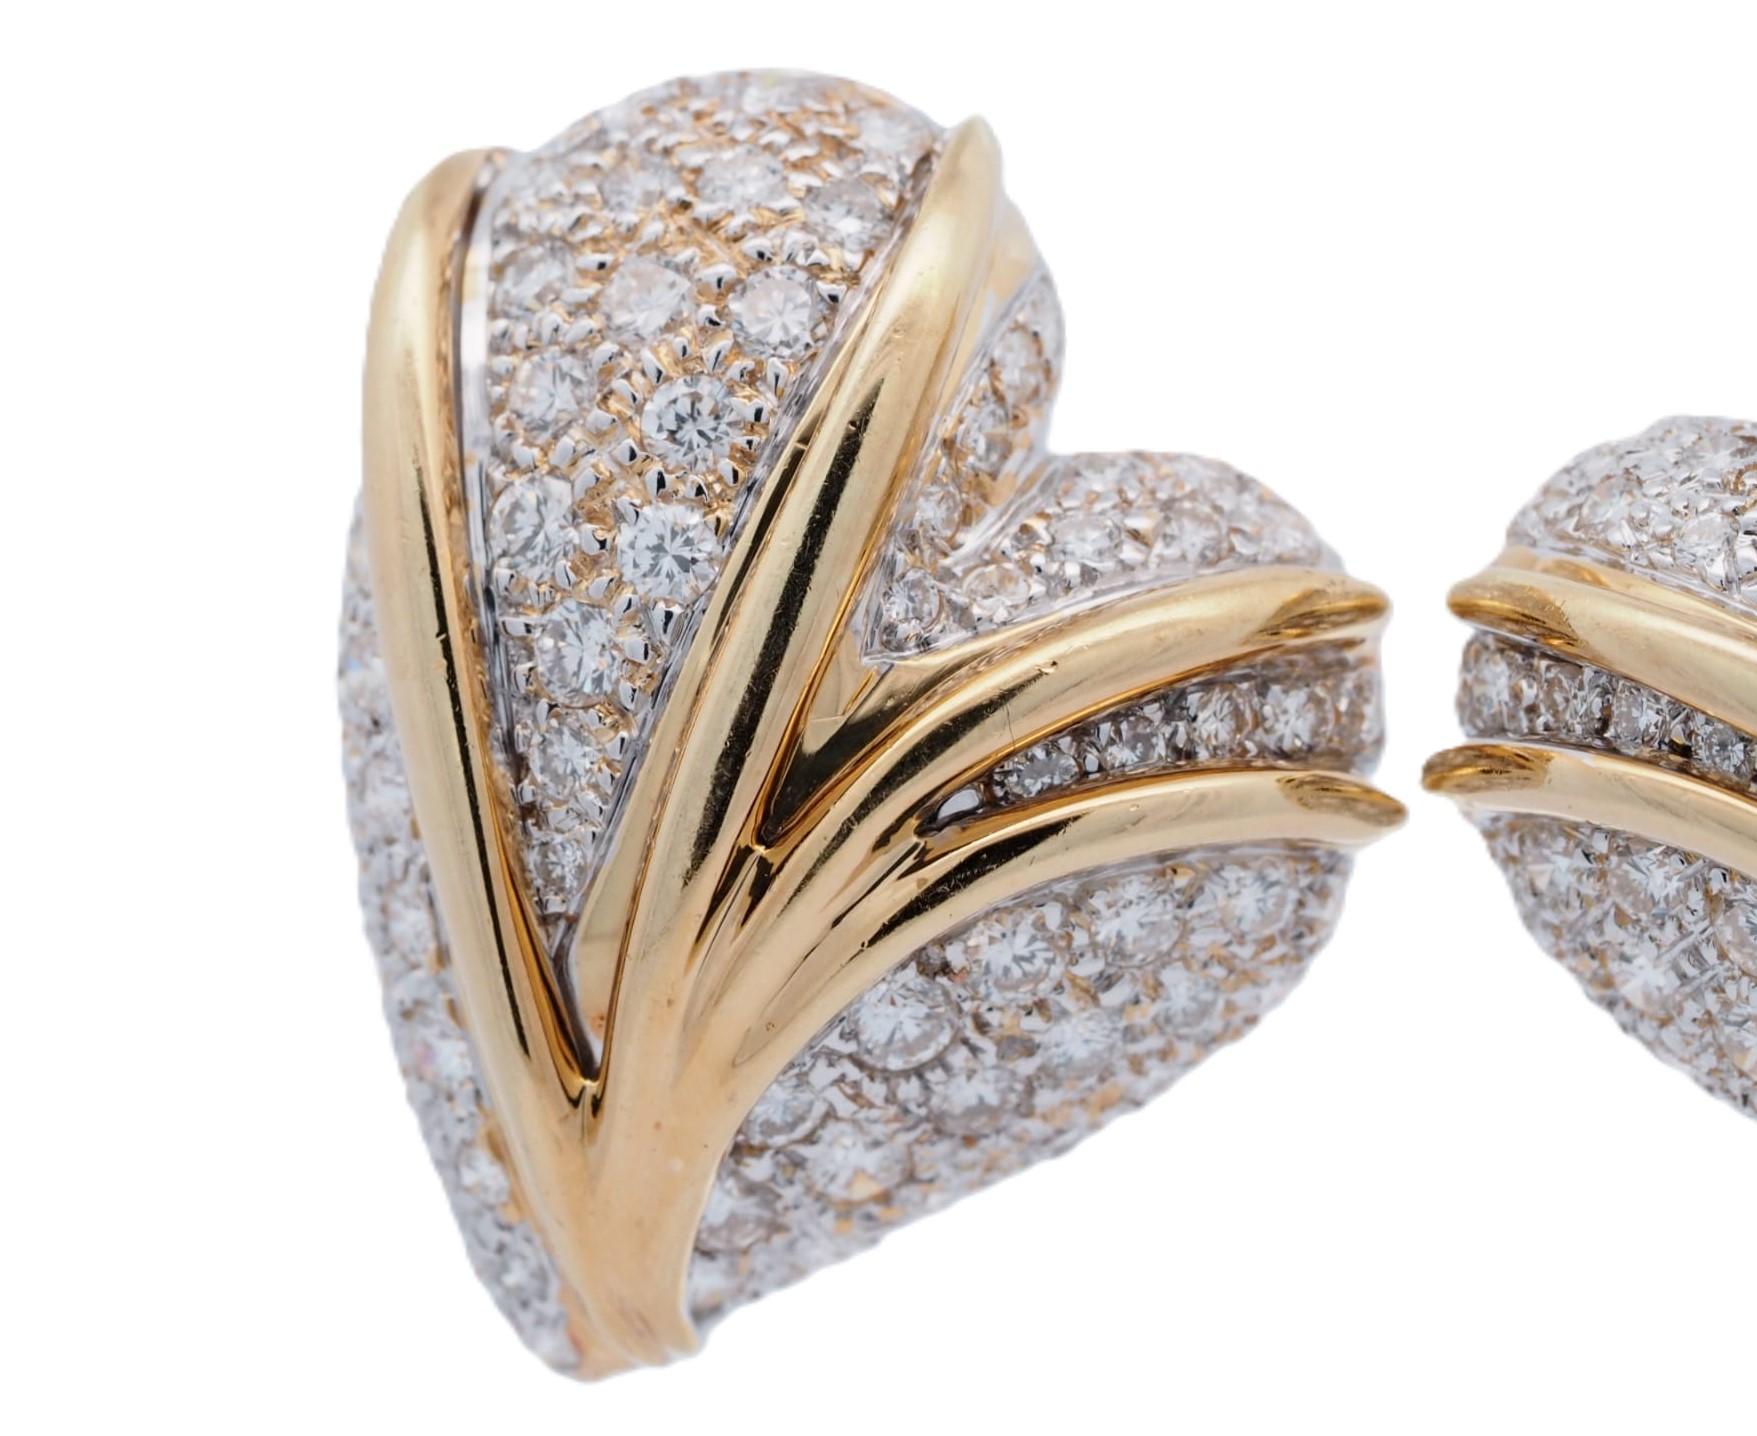 Mettez votre look en valeur avec ces superbes boucles d'oreilles Stefan Hafner en or jaune 18 carats, ornées de diamants en forme de cœur. Les boucles d'oreilles pèsent 27,3 grammes et comportent 138 diamants d'un poids total en carats de ~5 ct. Les